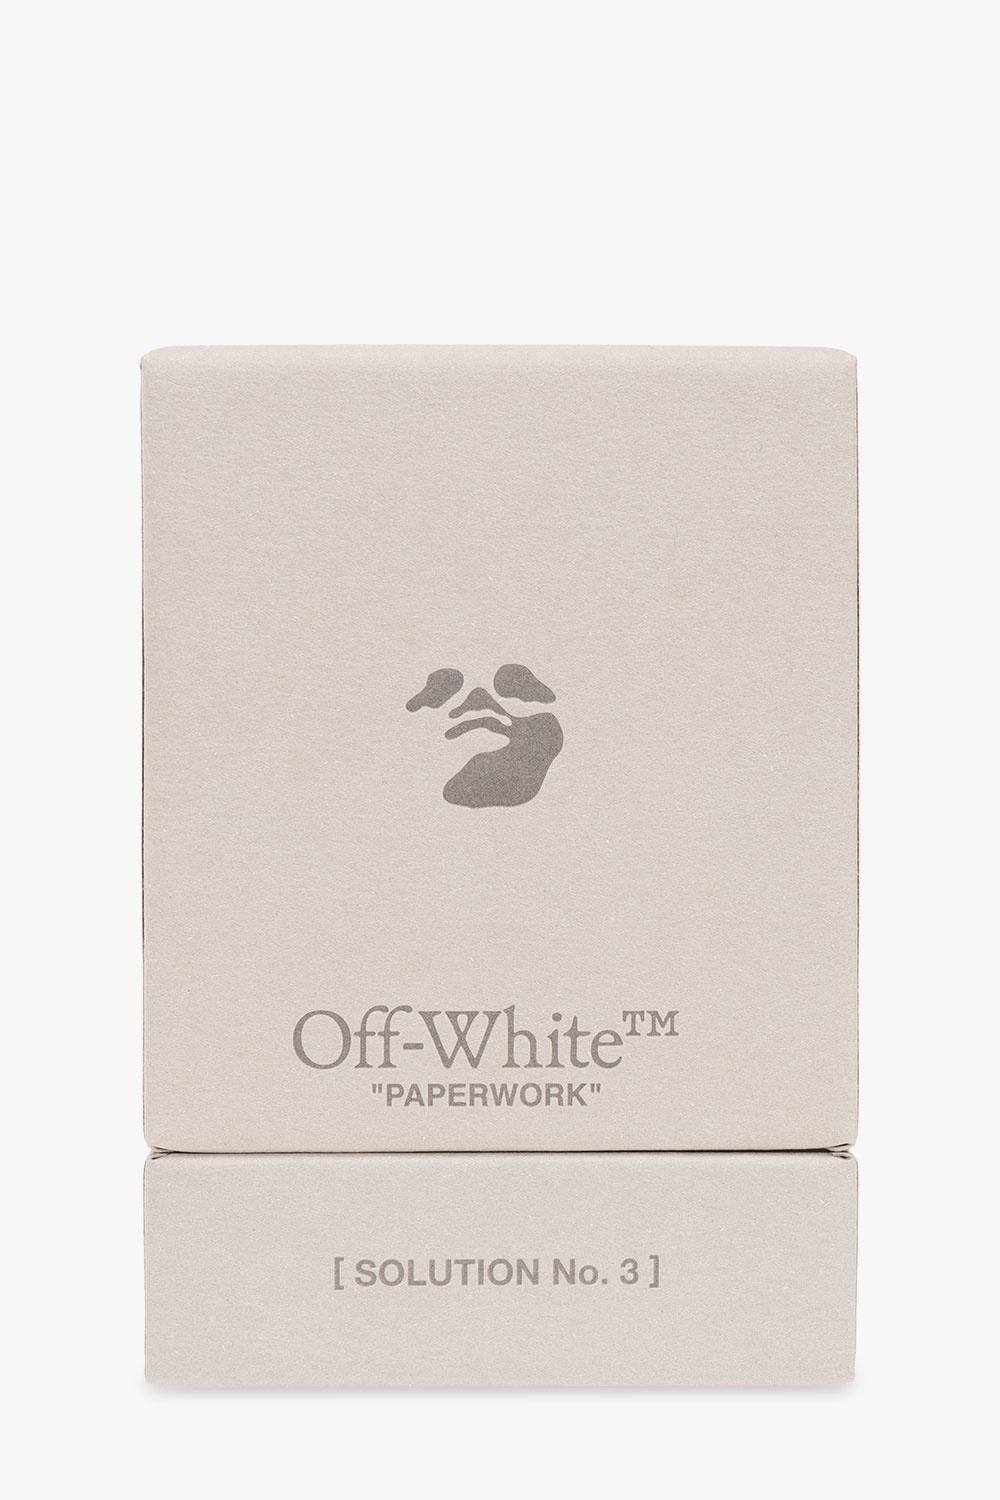 Off-White ‘Paperwork Solution No.3’ eau de parfum